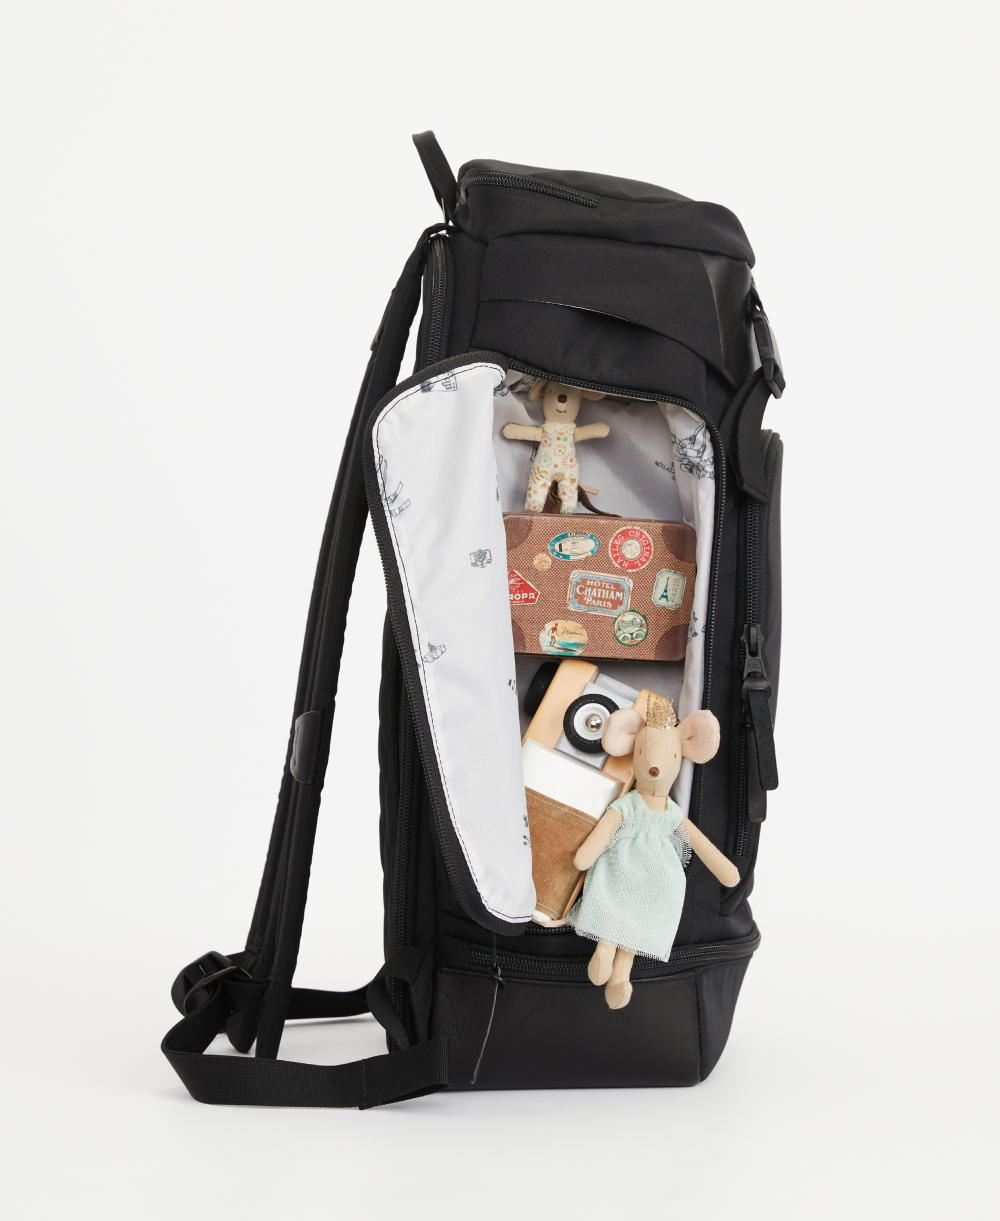 EG6930 - Kono Multi Way Travel Baby Changing Bag - Grey